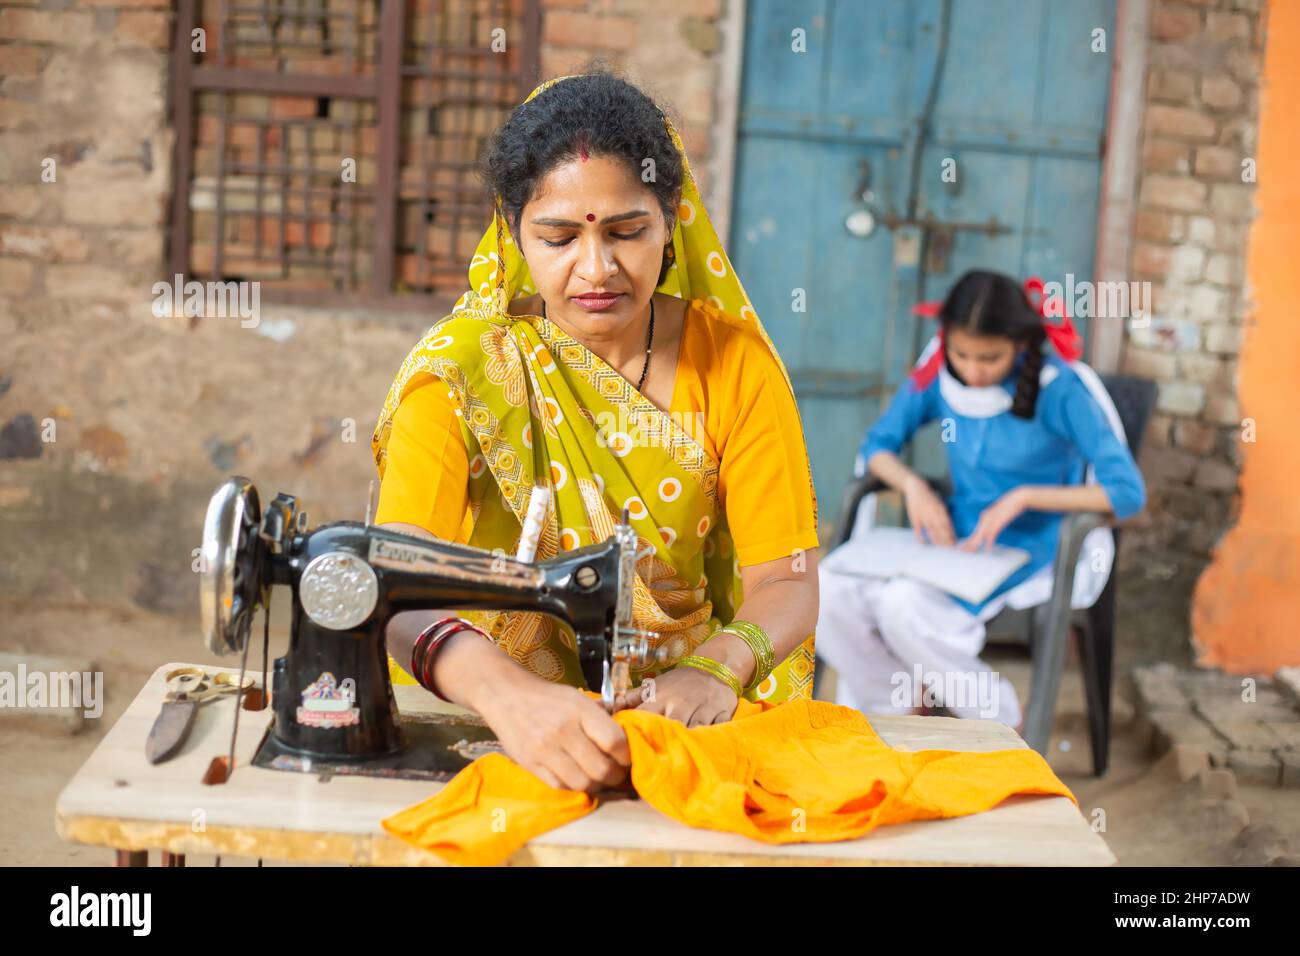 Ländliche indische Frau, die Nähmaschine benutzt, während ihre junge Tochter hinter ihr studiert. Stockfoto